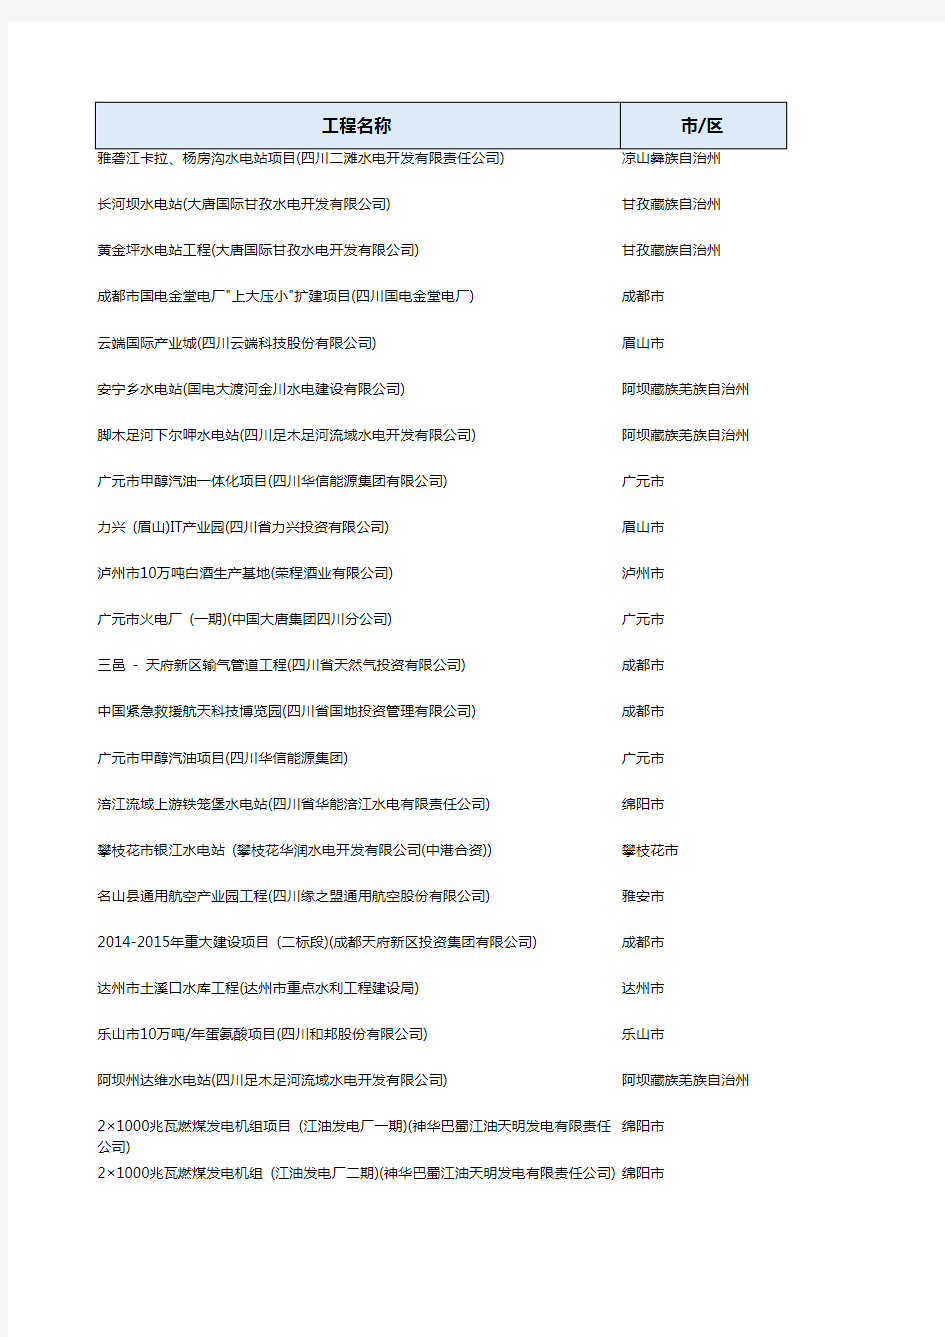 四川省 重大项目名单